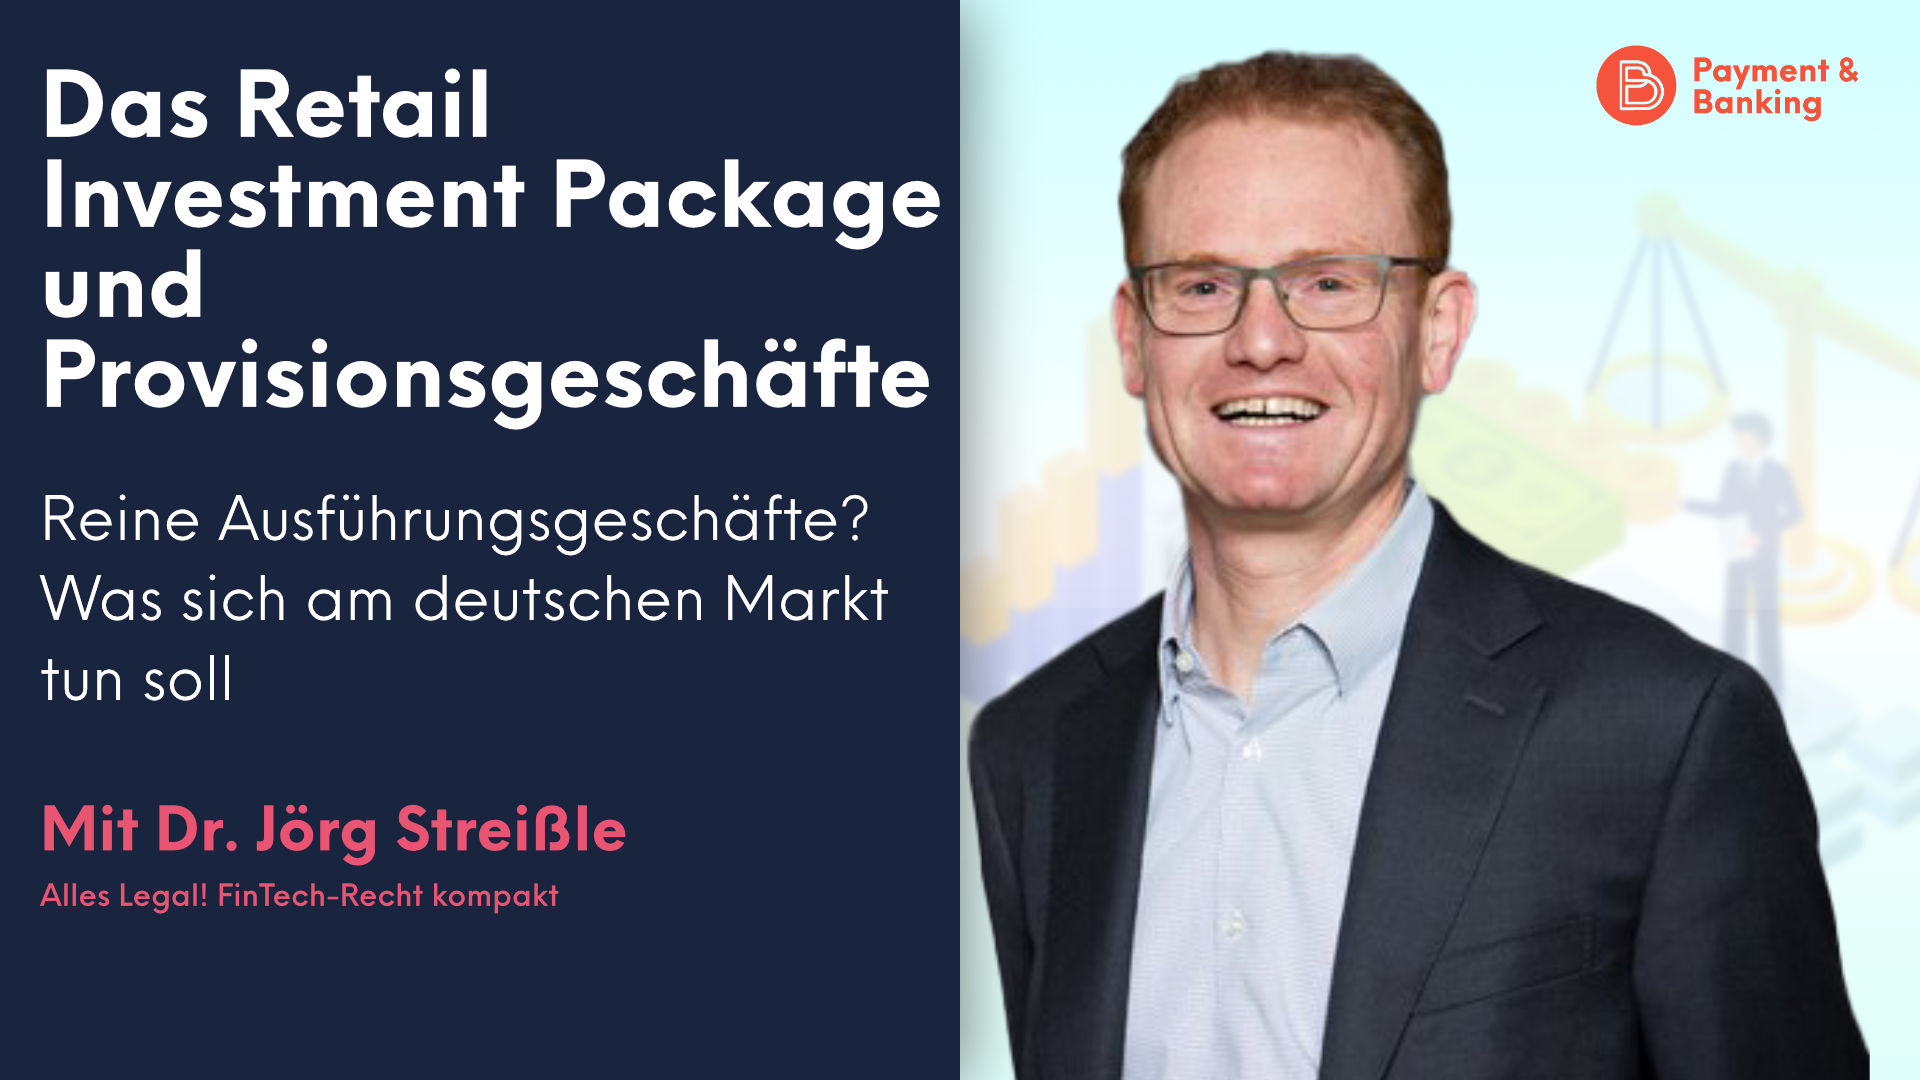 Dr. Jörg Streißle, Experte für aufsichts-, zivil- und gesellschaftsrechtlichen Themen, erklärt, wie das Retail Investment Package und Provisionsgeschäfte in Deutschland miteinander in Verbindung stehen.